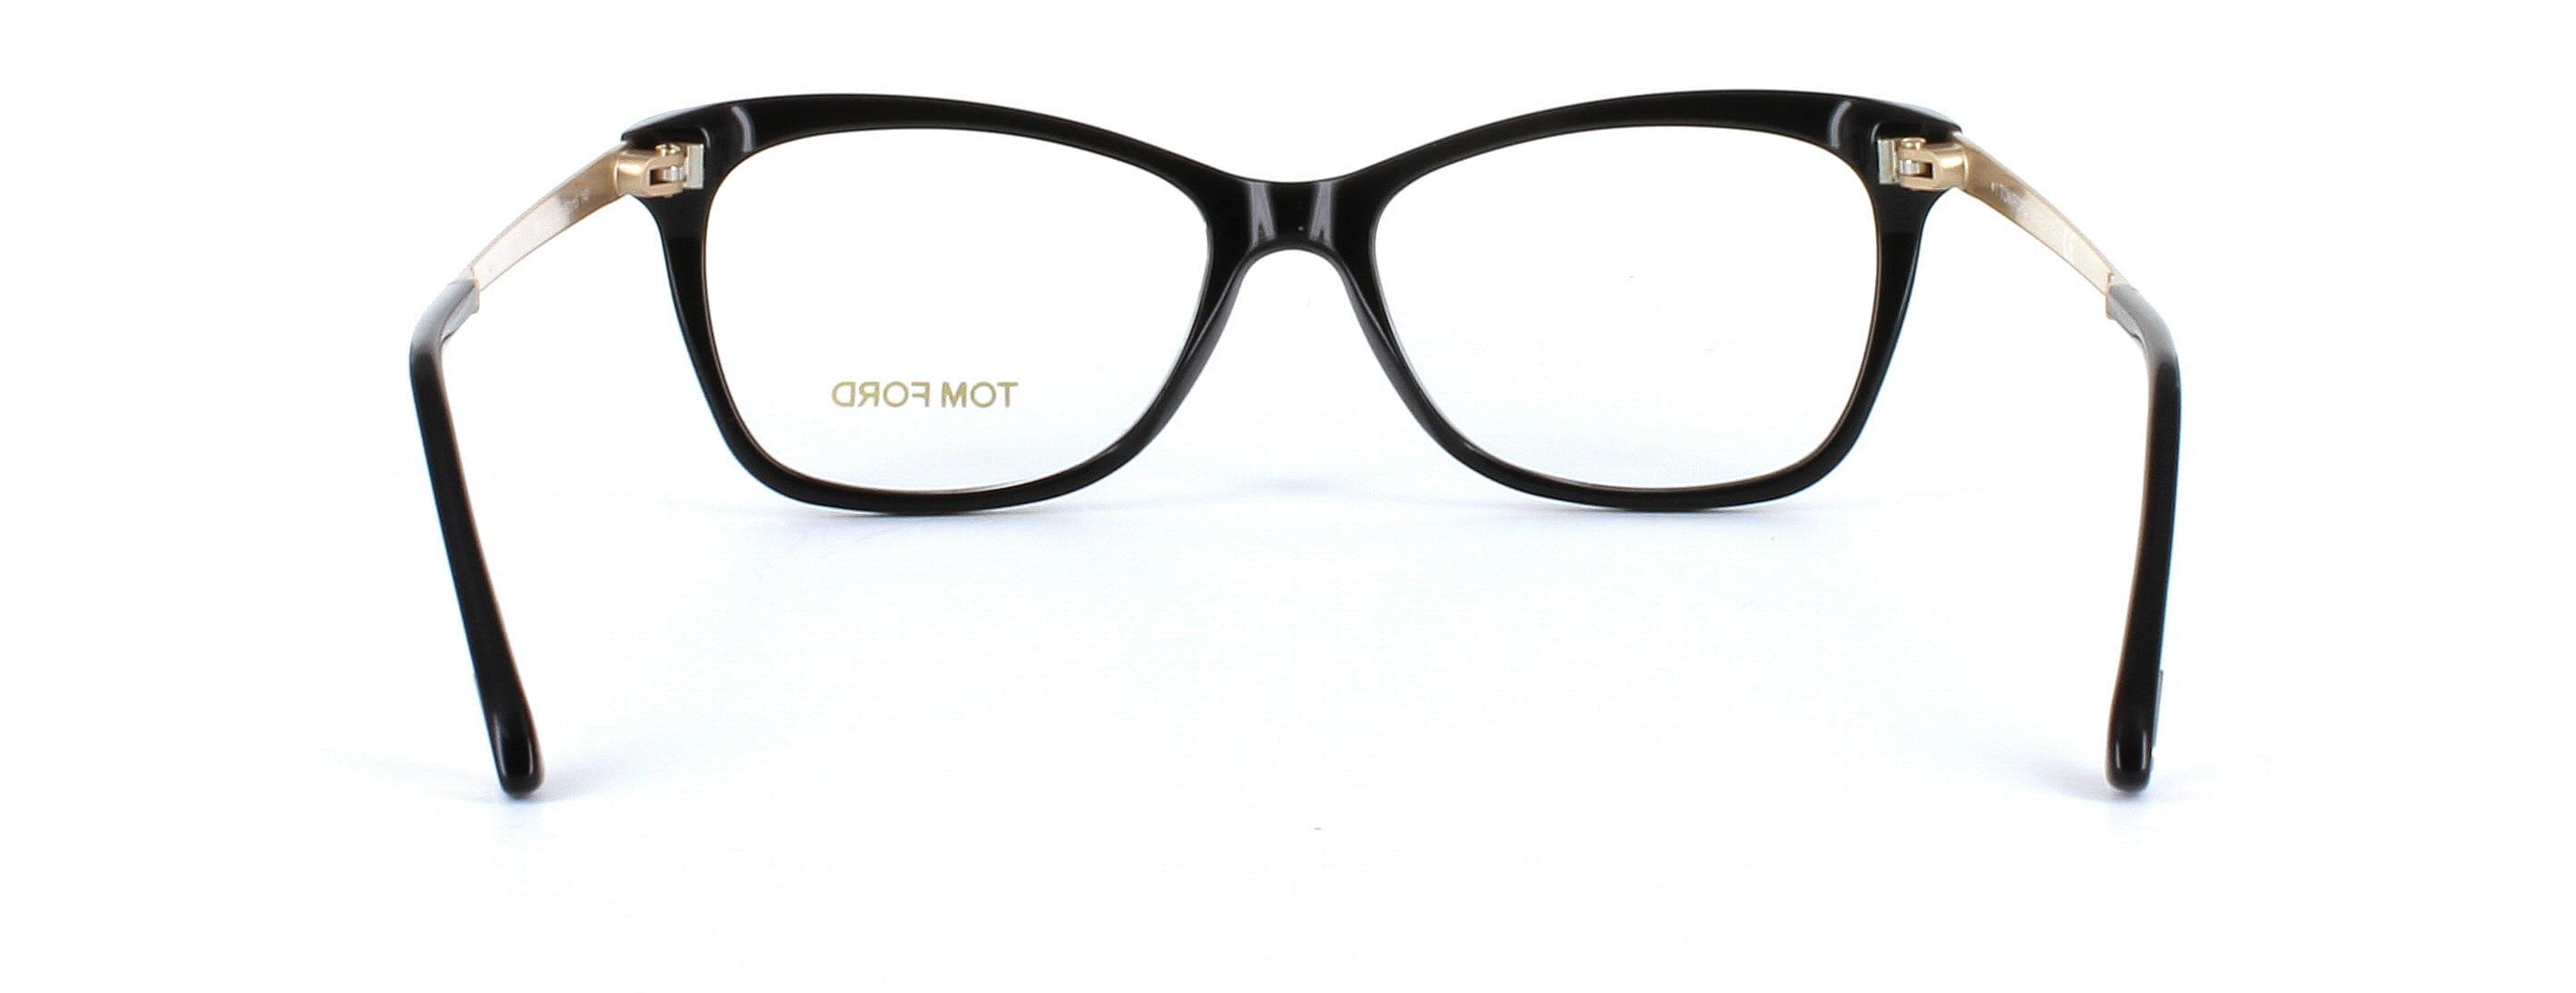 Tom Ford glasses - FT5353 - shiny black image 3